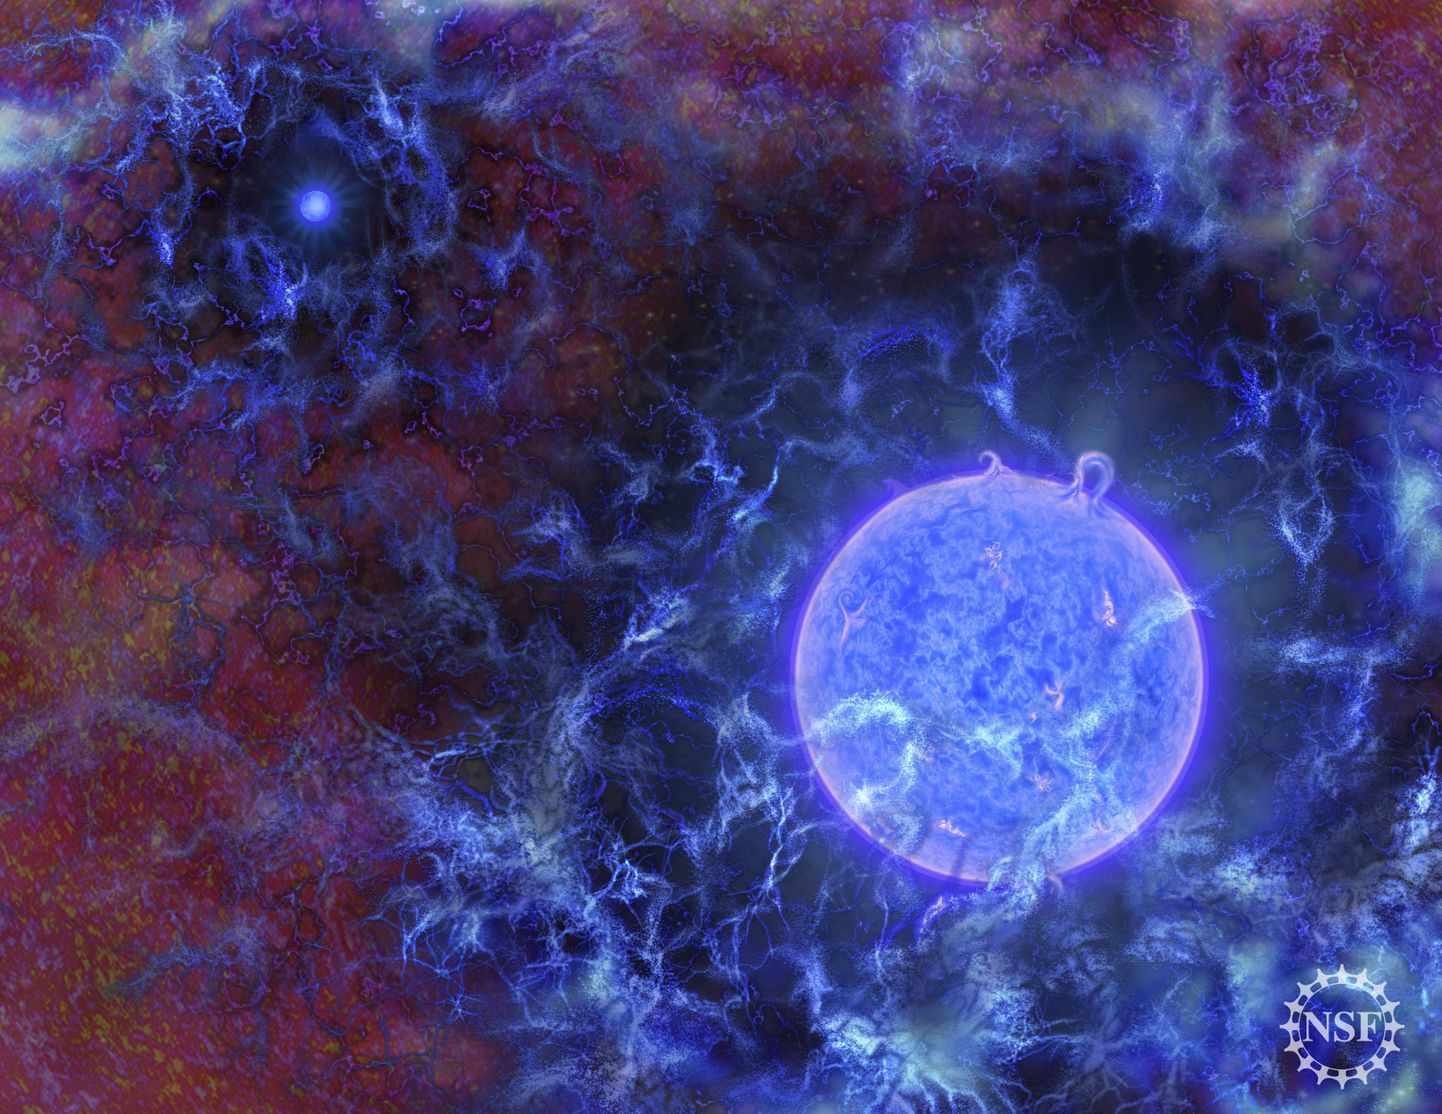 Kunstniku nägemus vastsündinud universumi esimestest sinakatest tähtedest